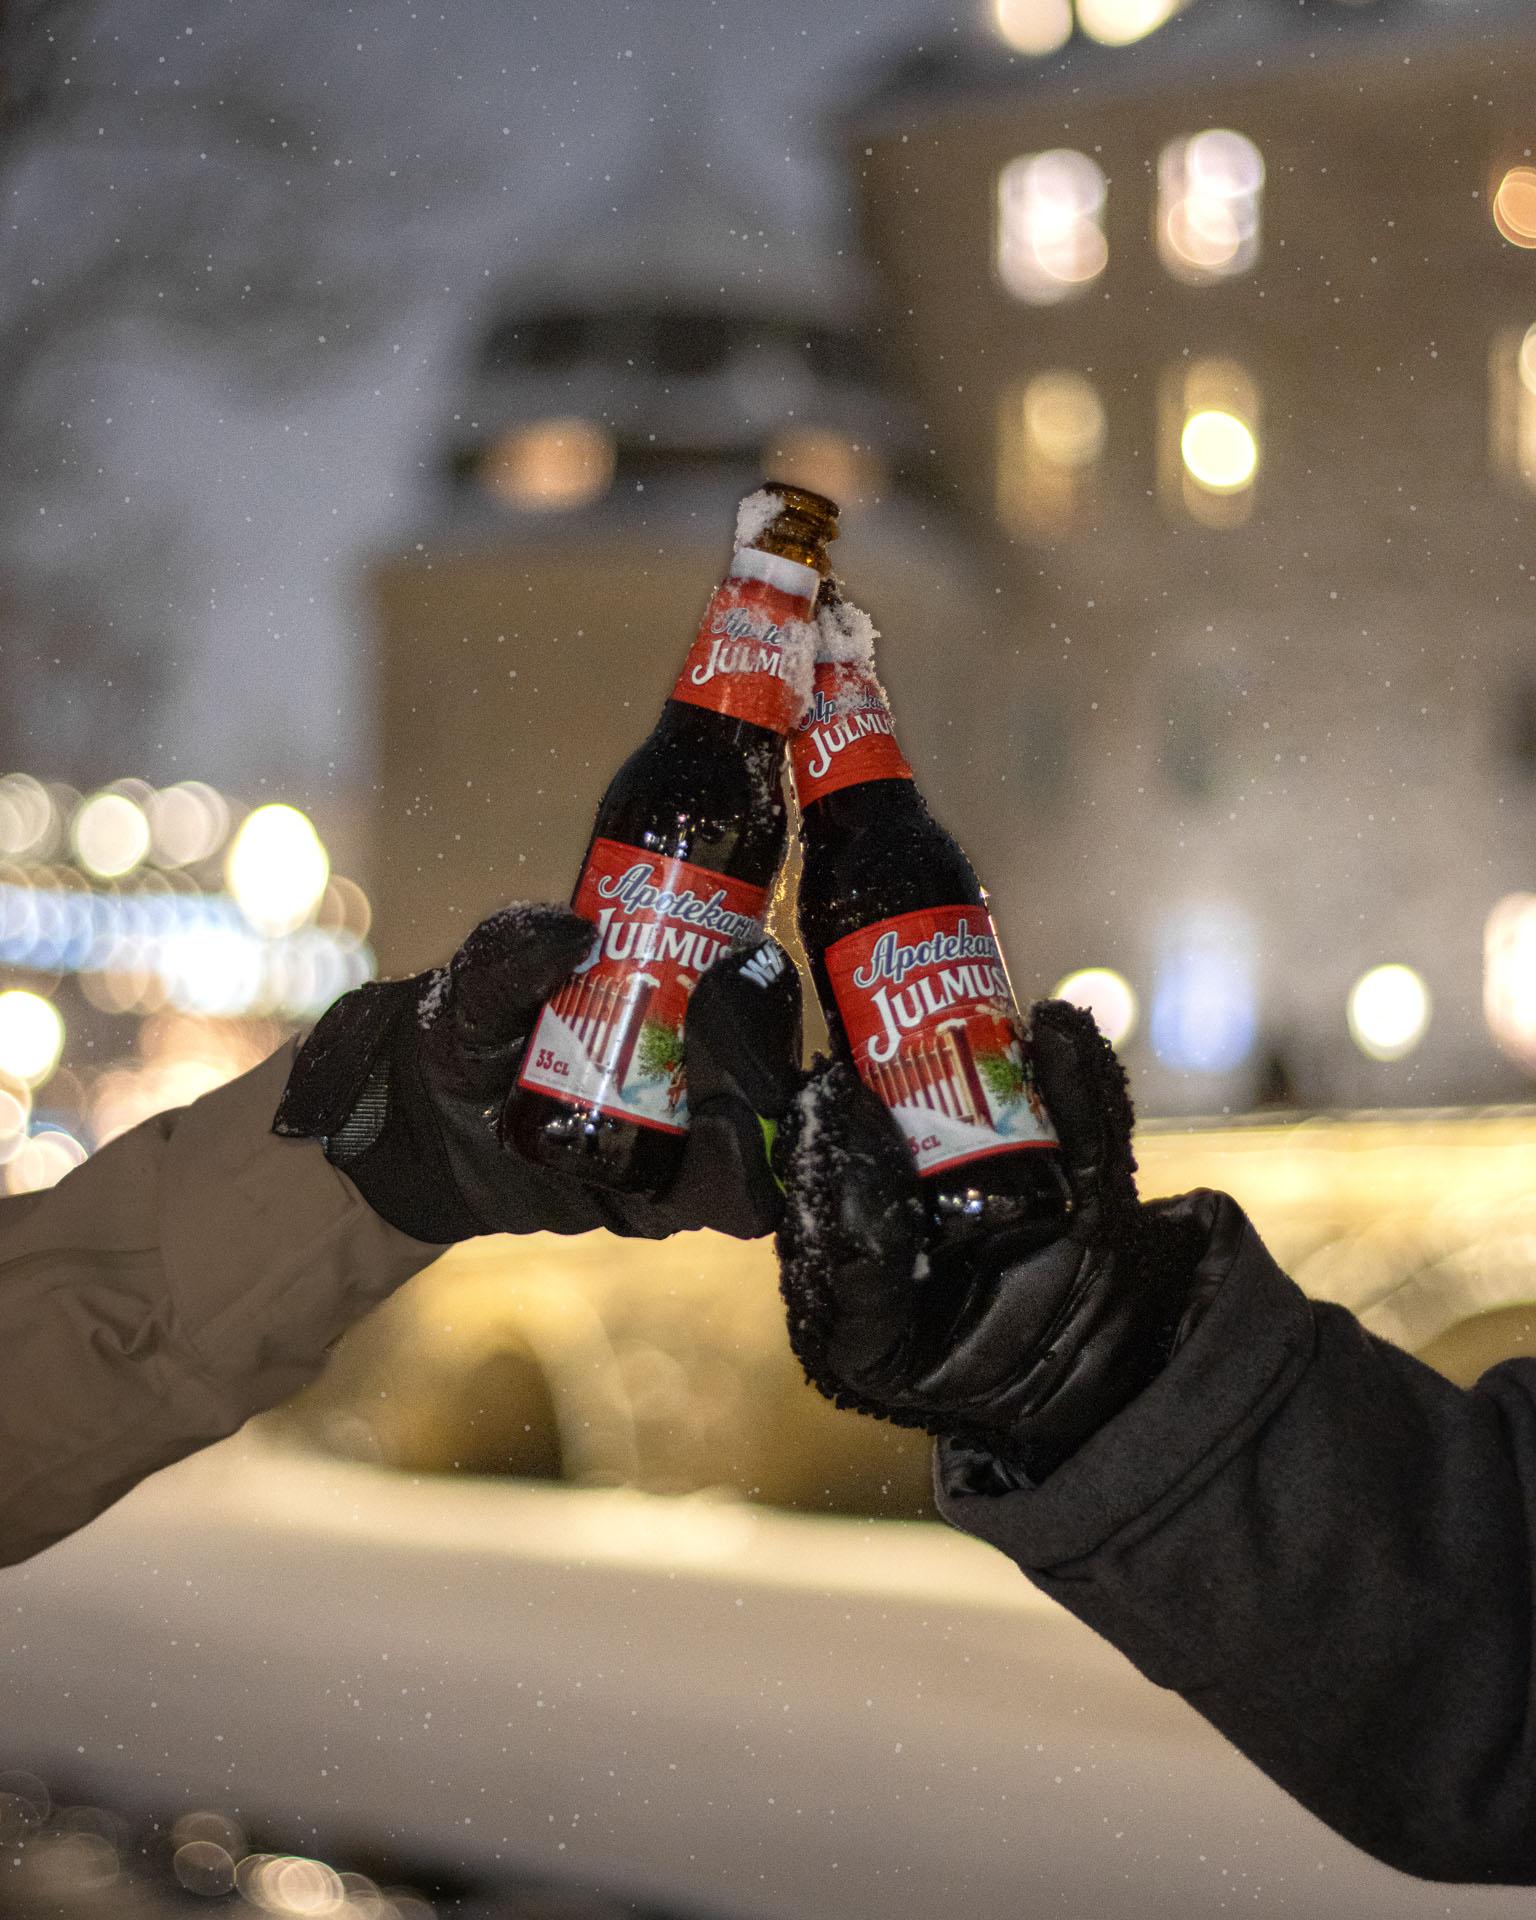 Two bottles of Julmust in a snowy Örebro.